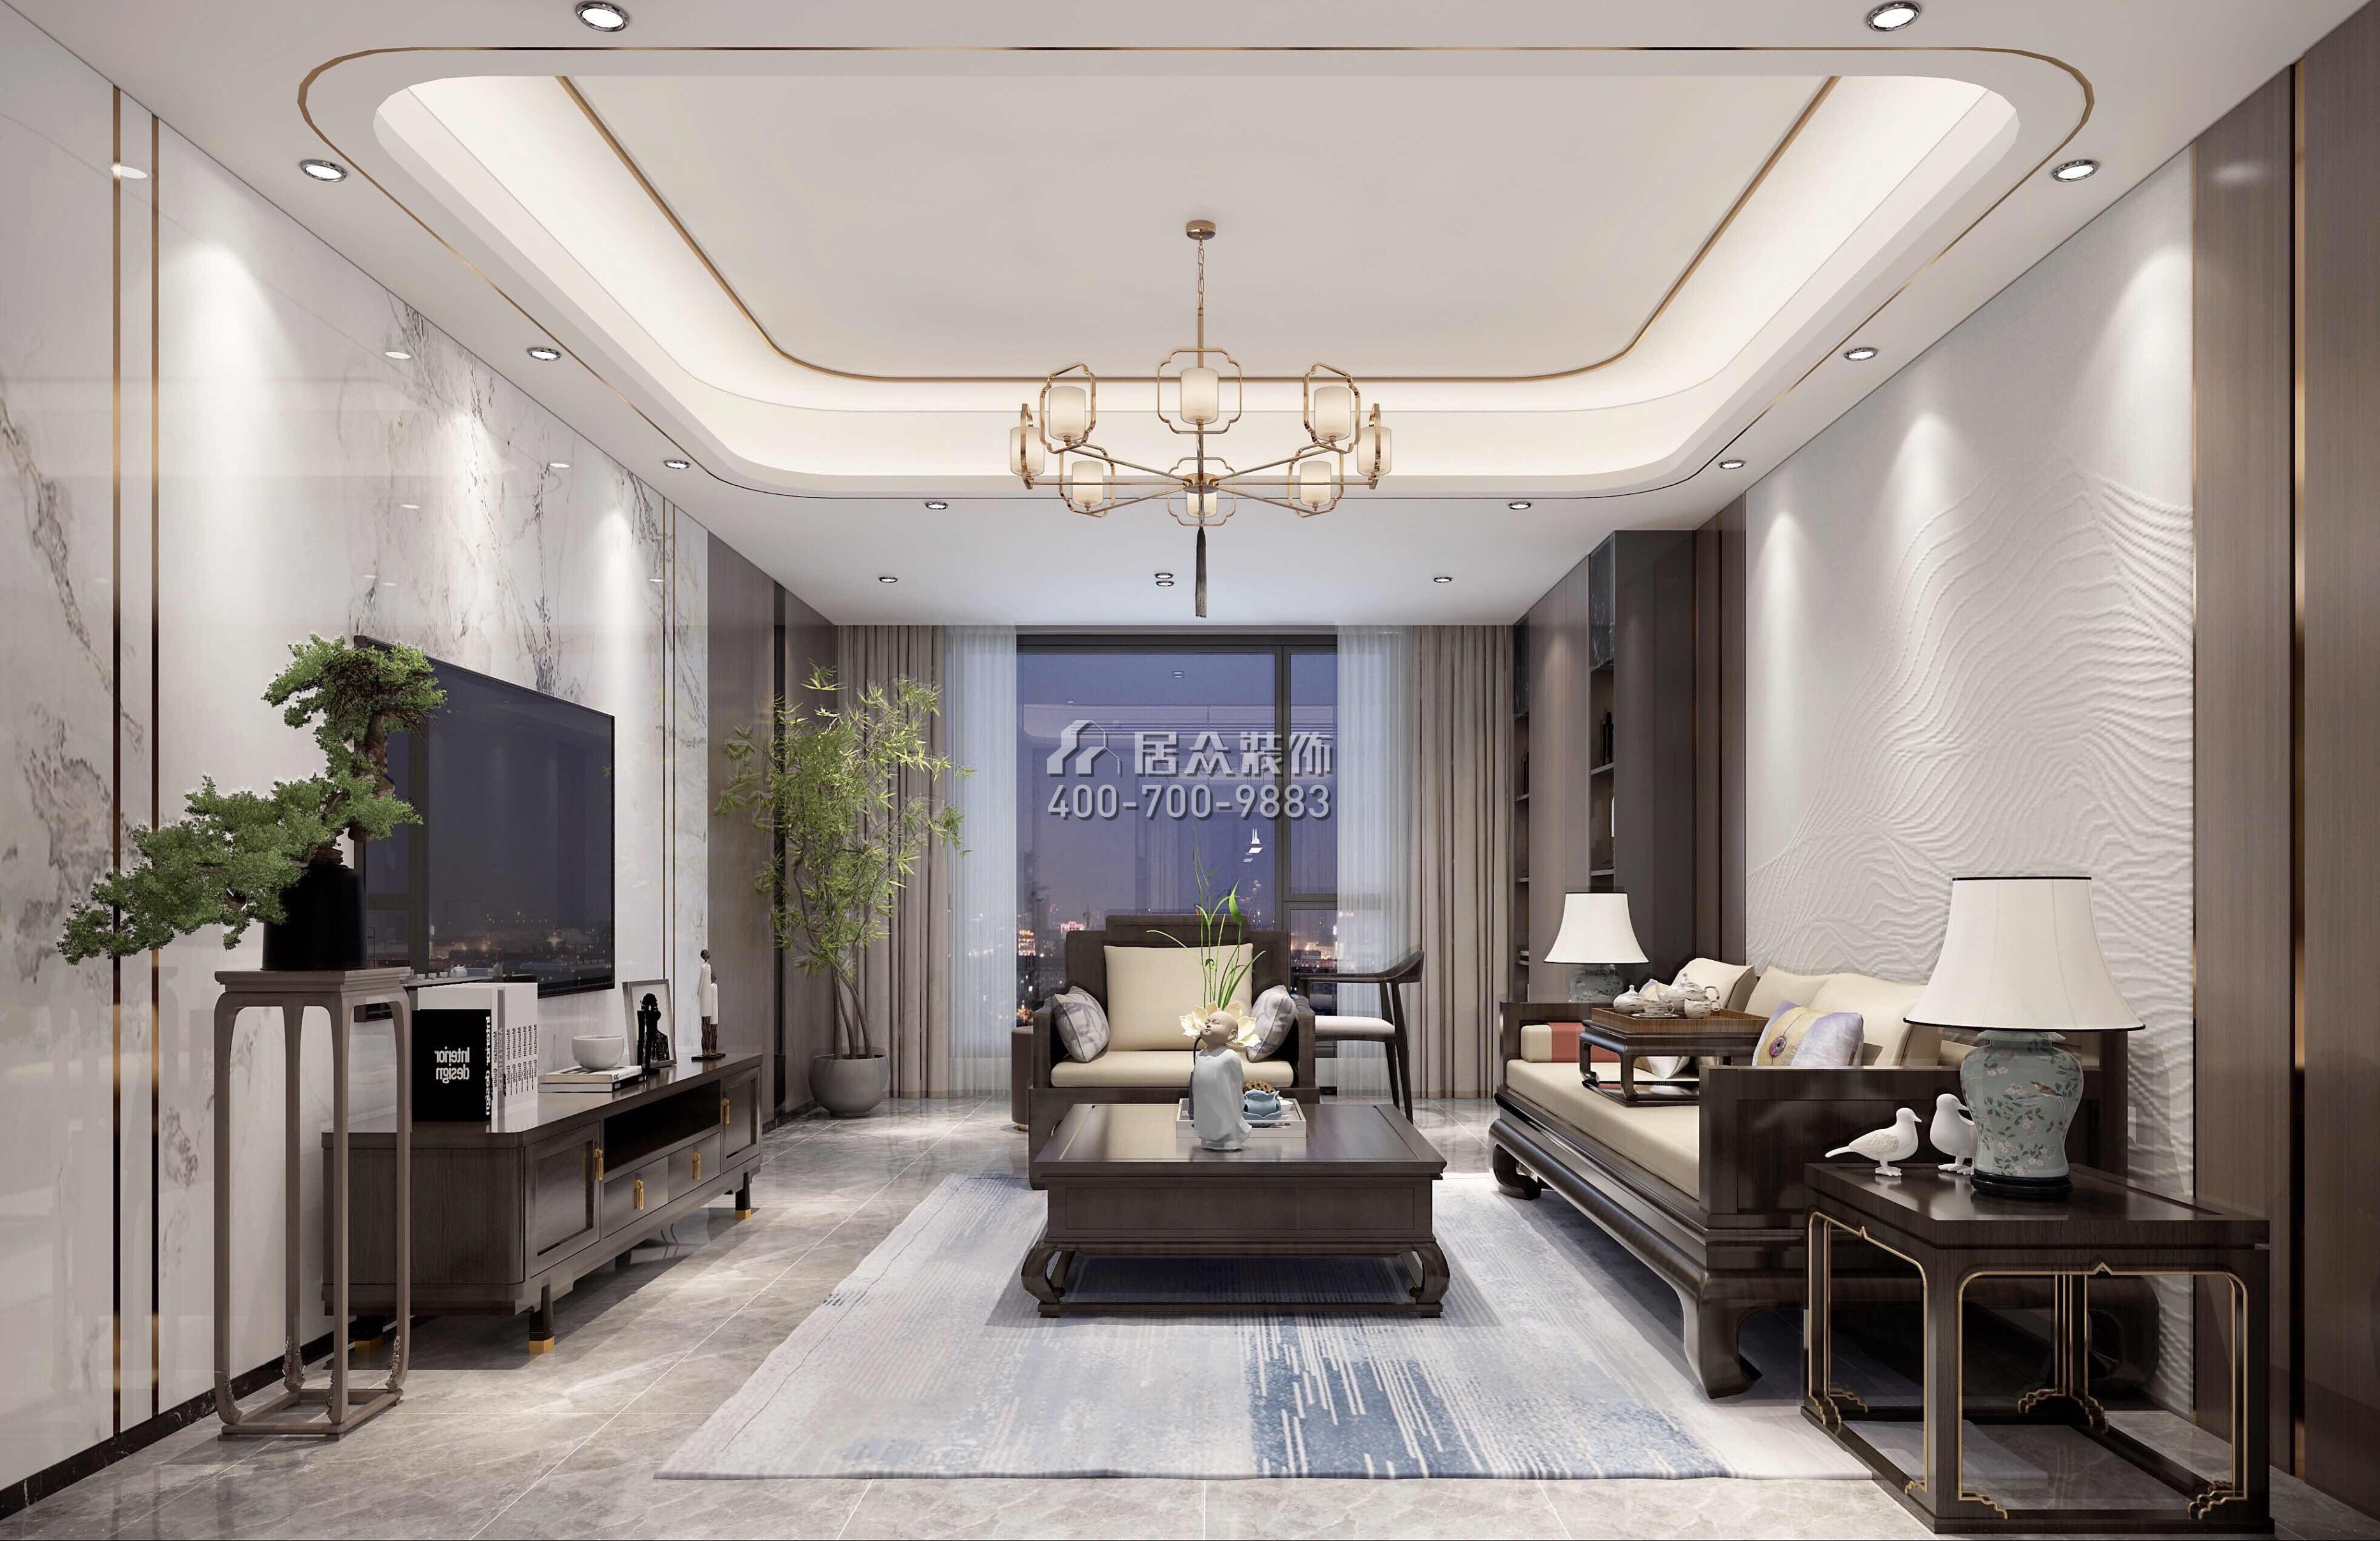 翠湖香山140平方米中式风格平层户型客厅装修效果图